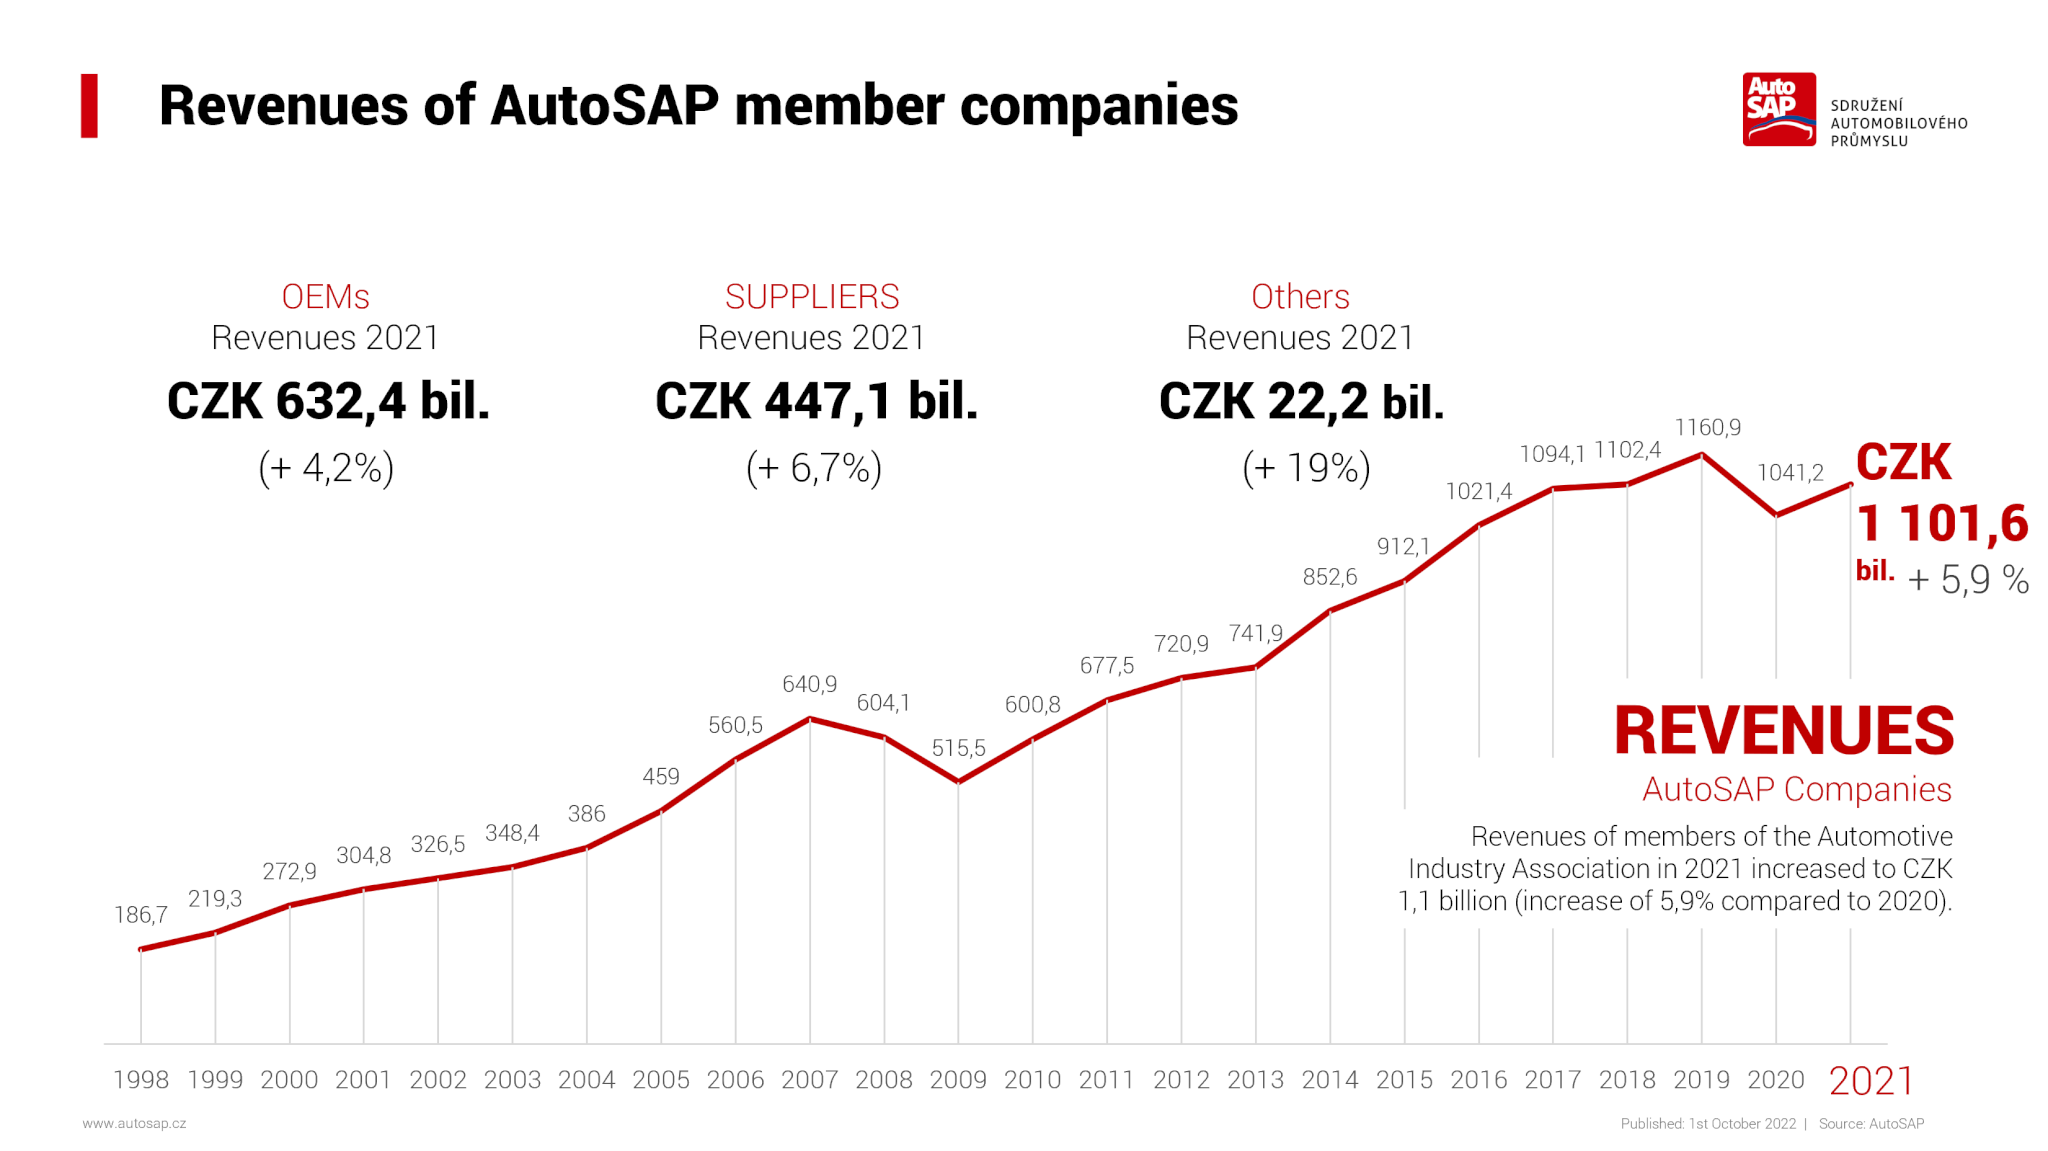 L'association AutoSap regroupe la plupart des acteurs de l'industrie automobile. Le chiffre est indiqué pour les constructeurs, les équipementiers et d'autres sociétés.